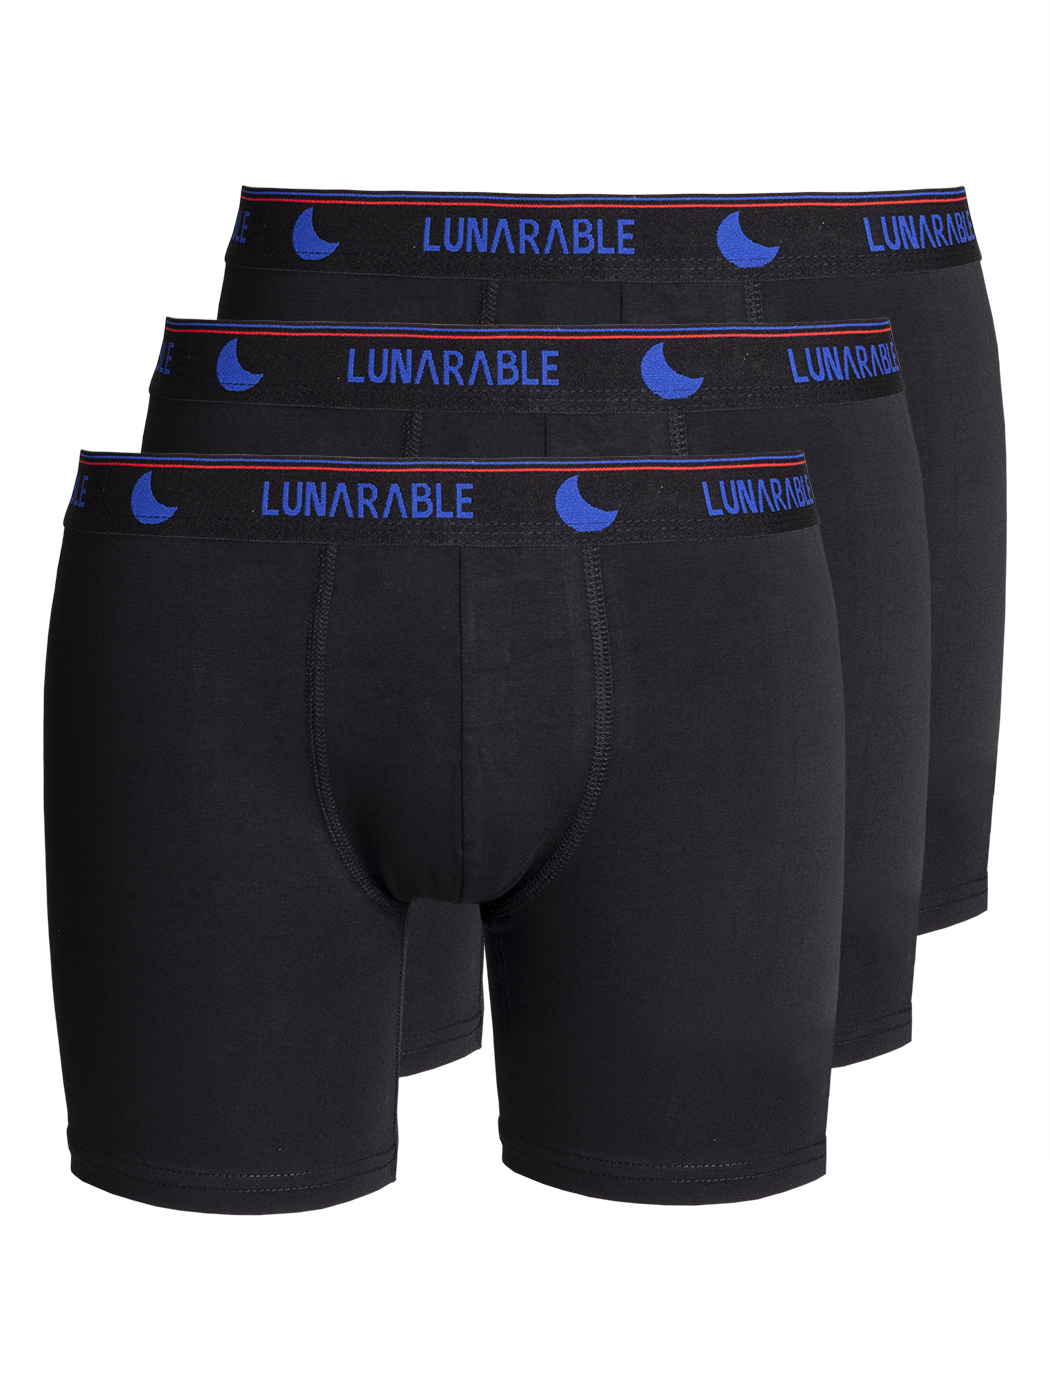 Комплект трусов мужских Lunarable ebox180_ черных XXL